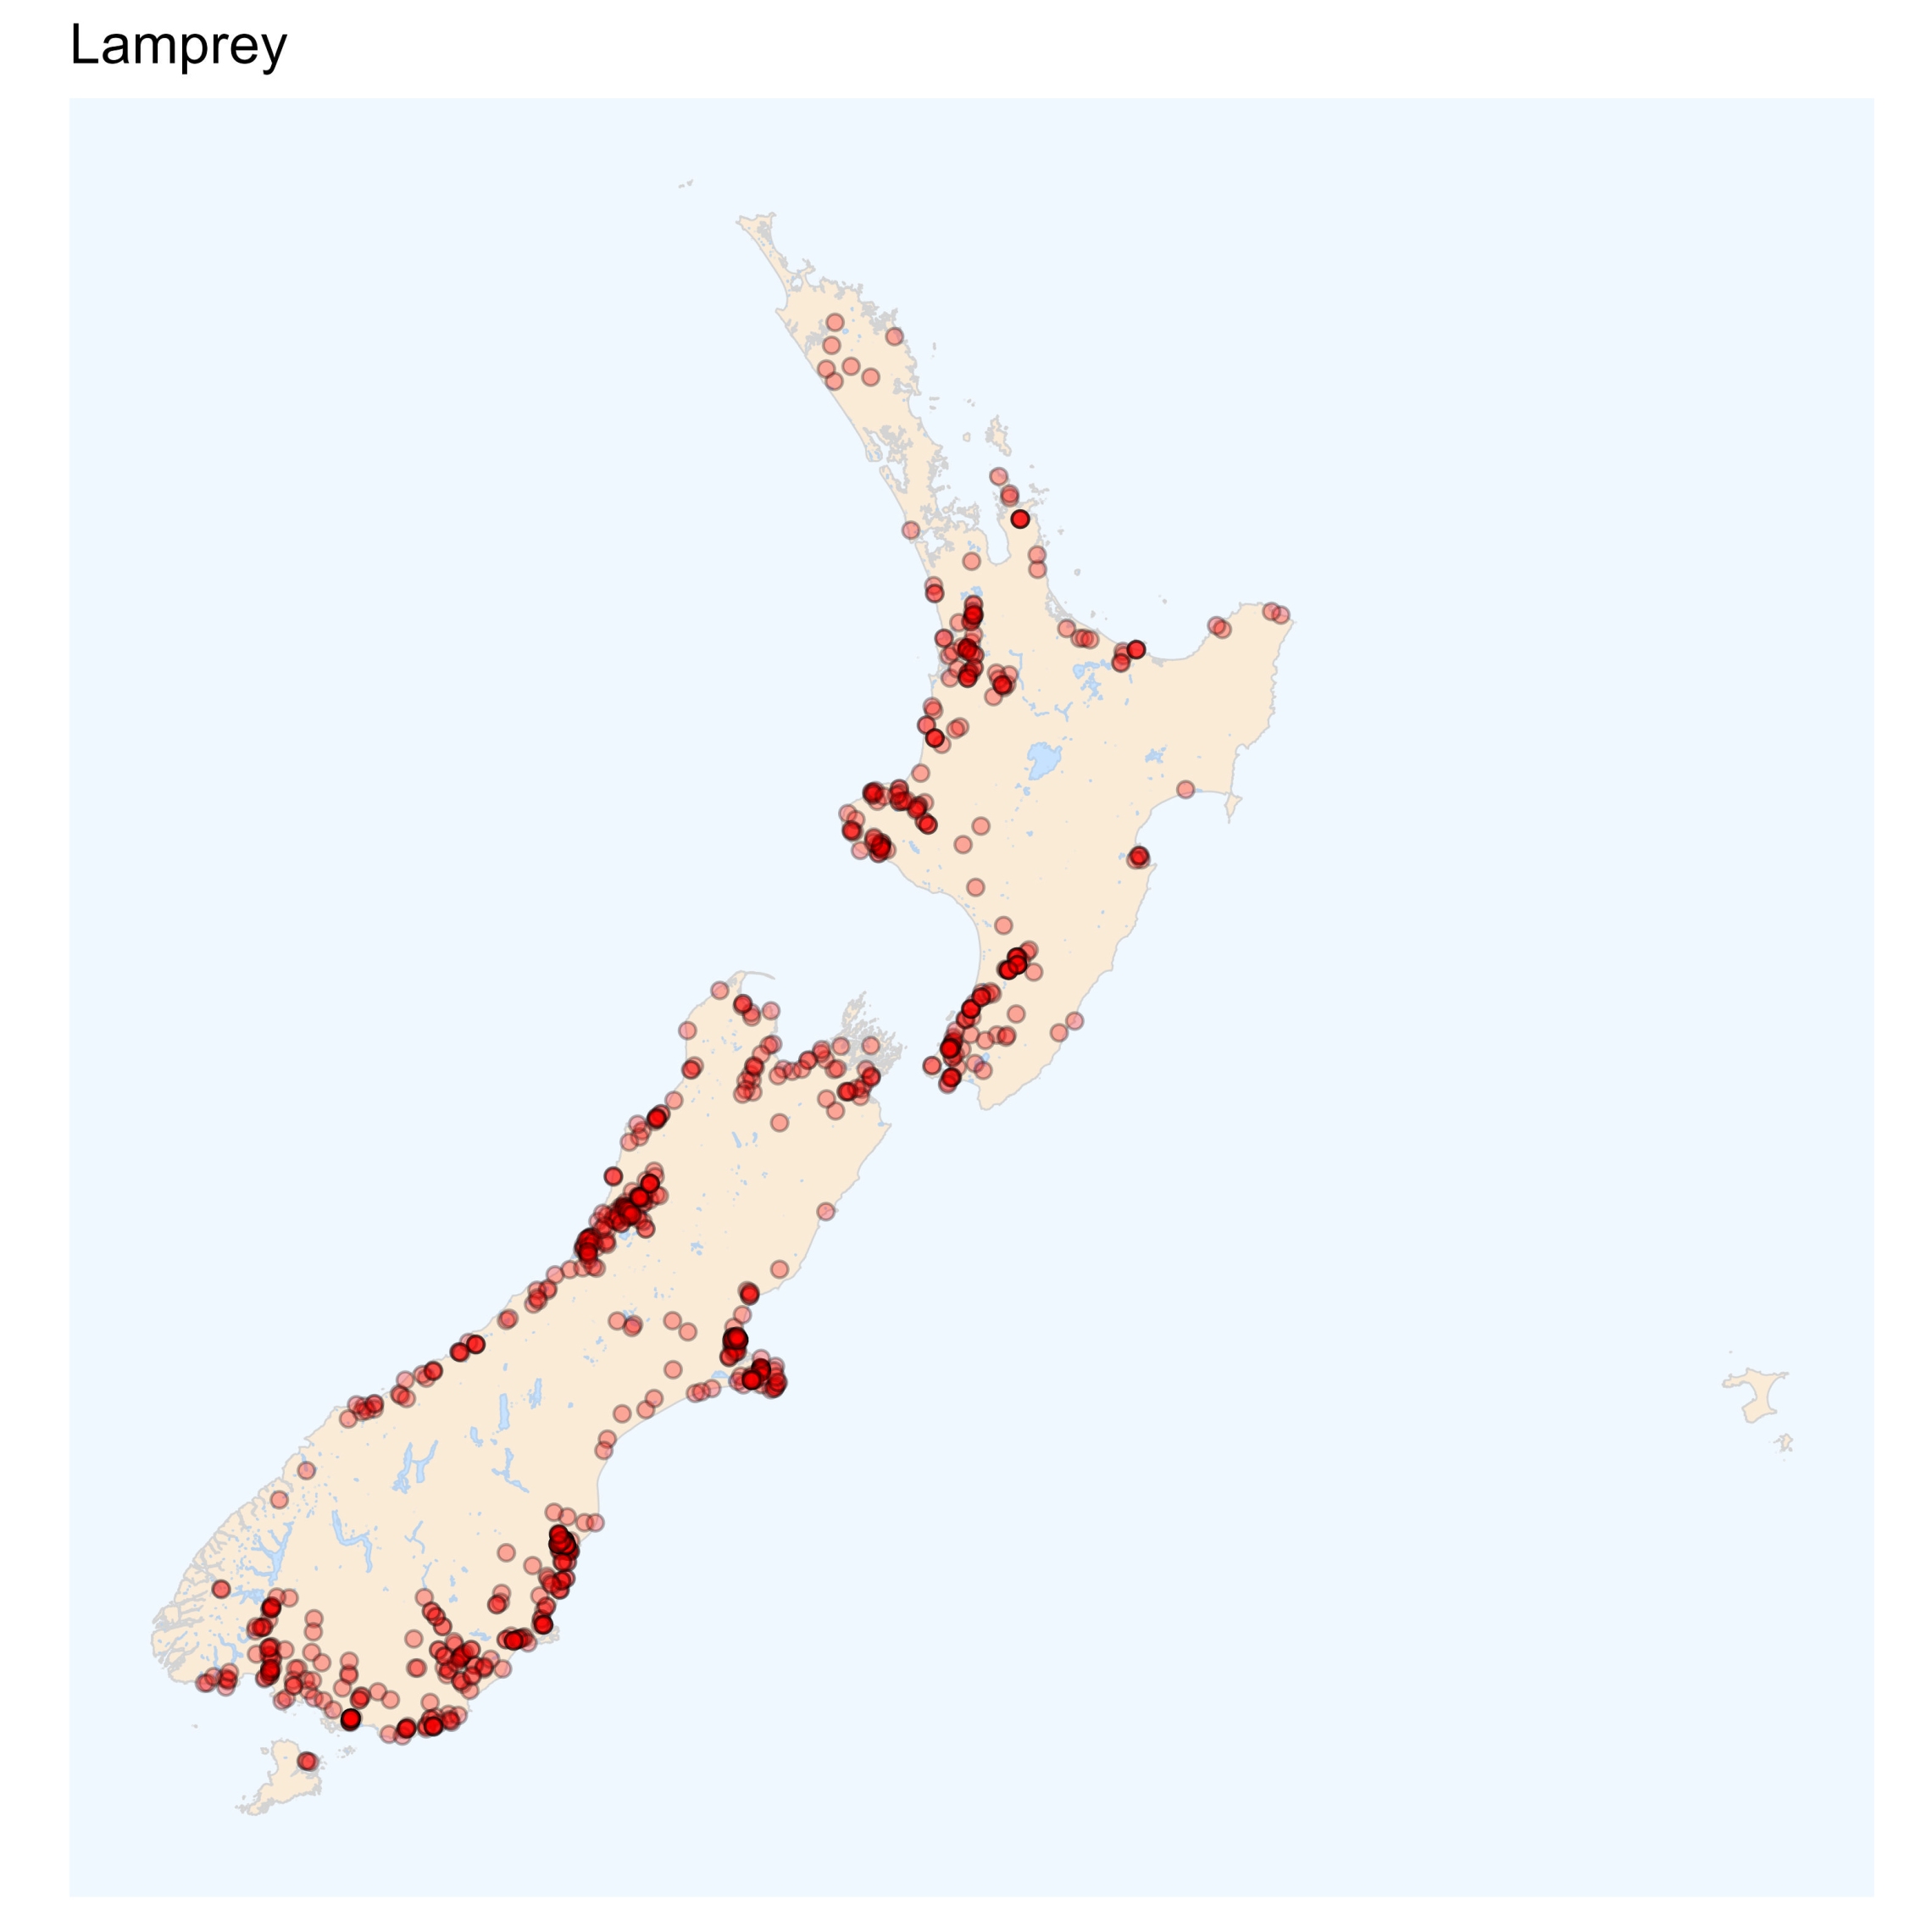 Lamprey distribution map [2024]